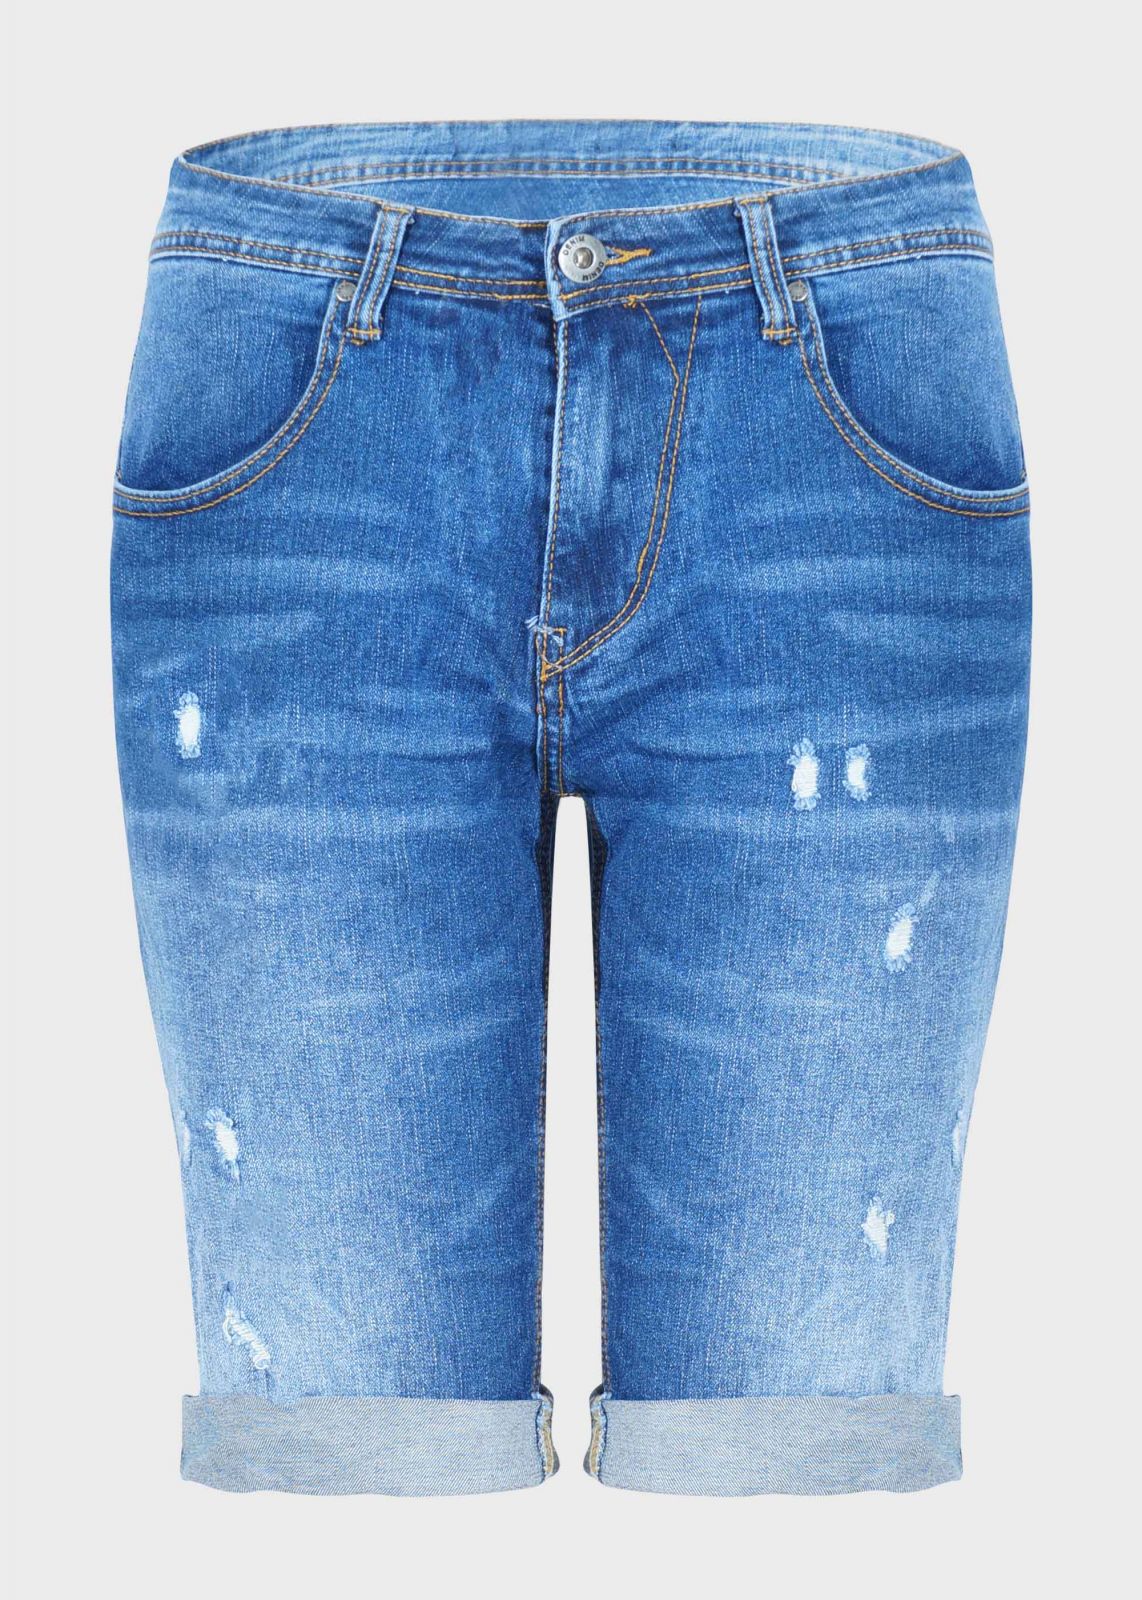 Ανδρική βερμούδα ελαστική  jean ελαφριά ξεβάματα ρεβέρ. Denim Collection.